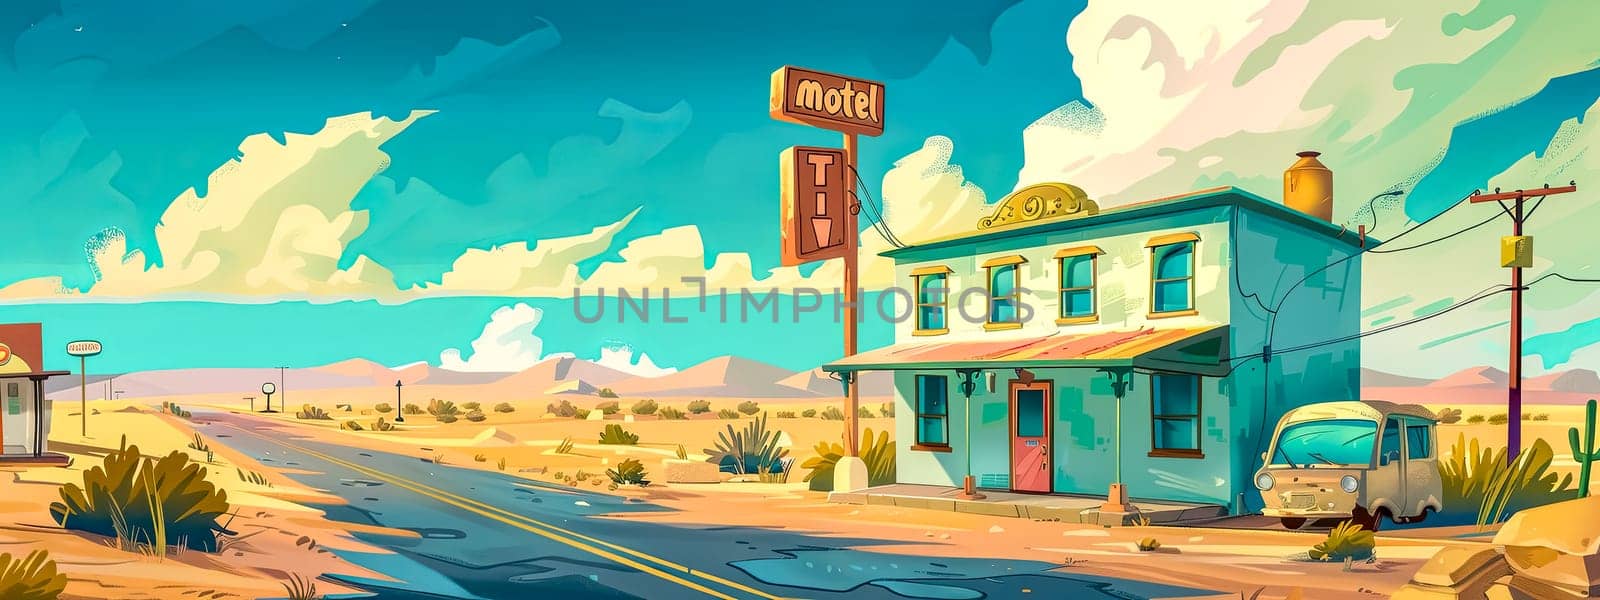 Retro motel on a desert highway by Edophoto